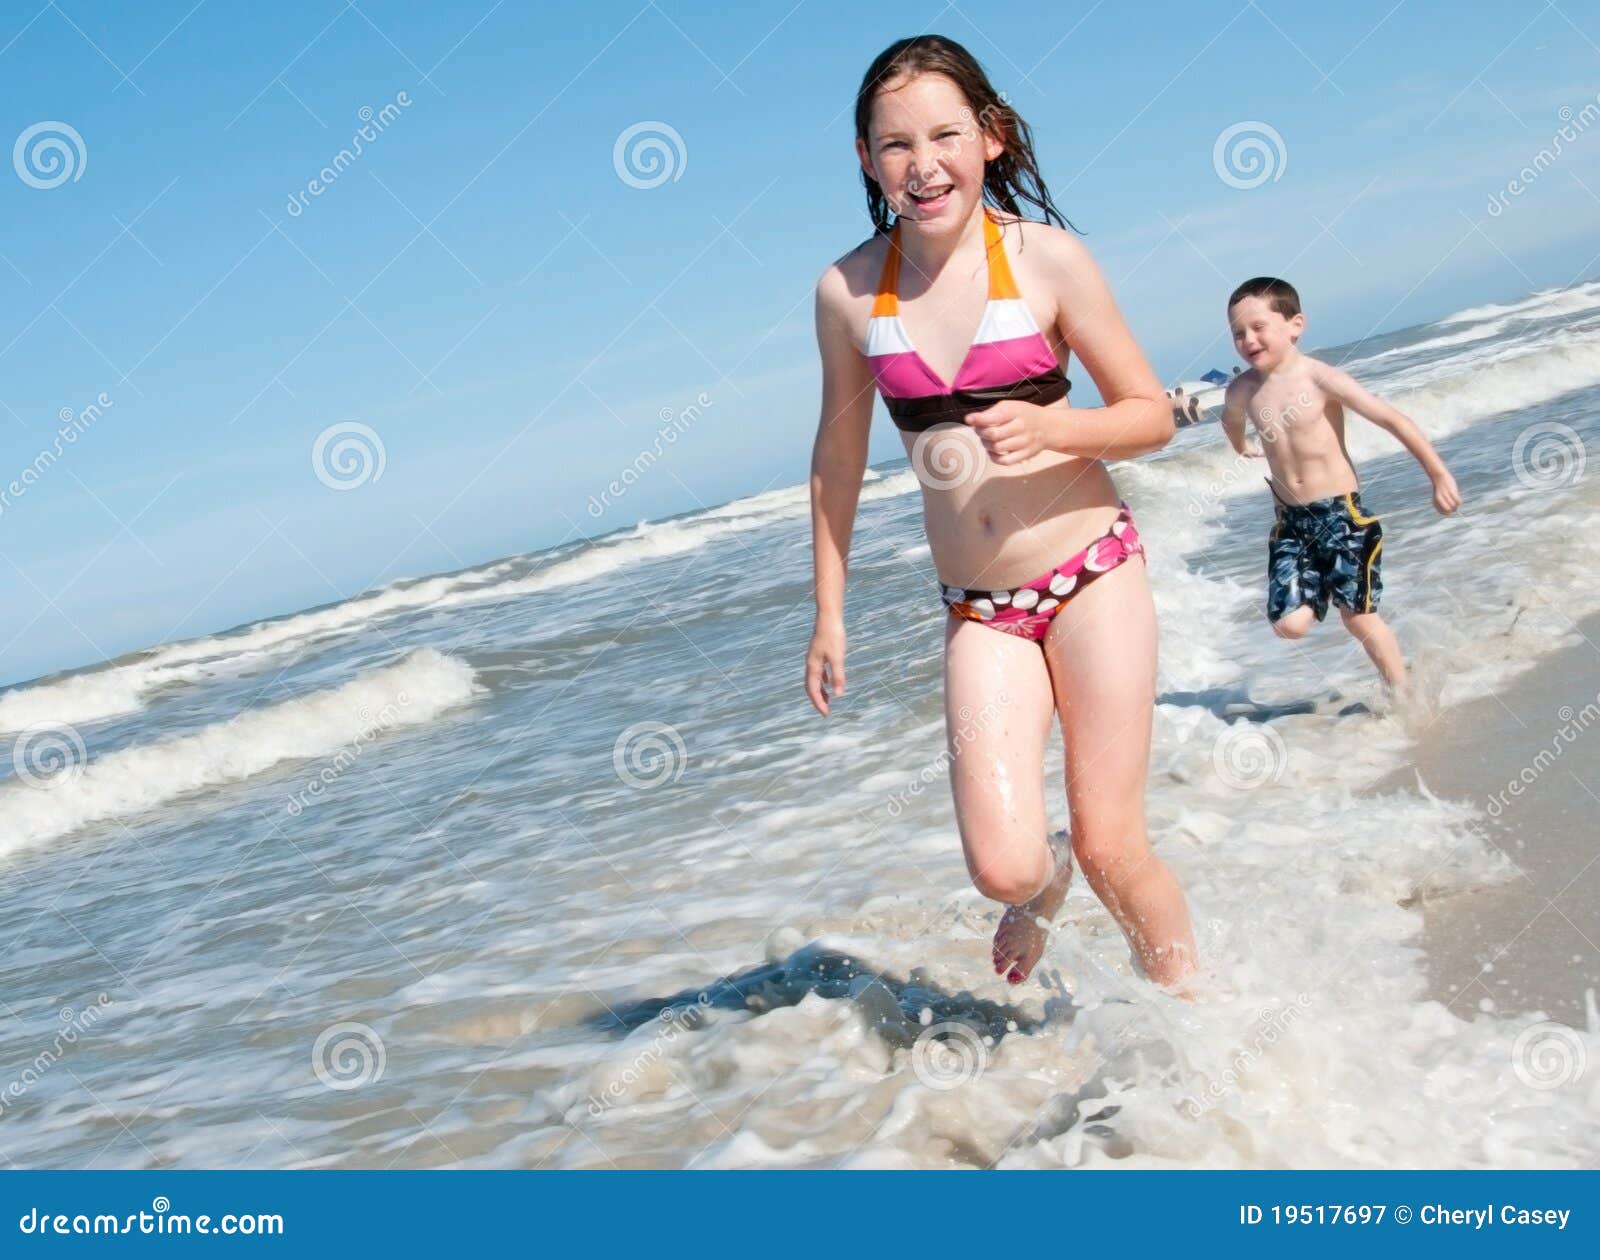 с детьми голым на пляж фото 93